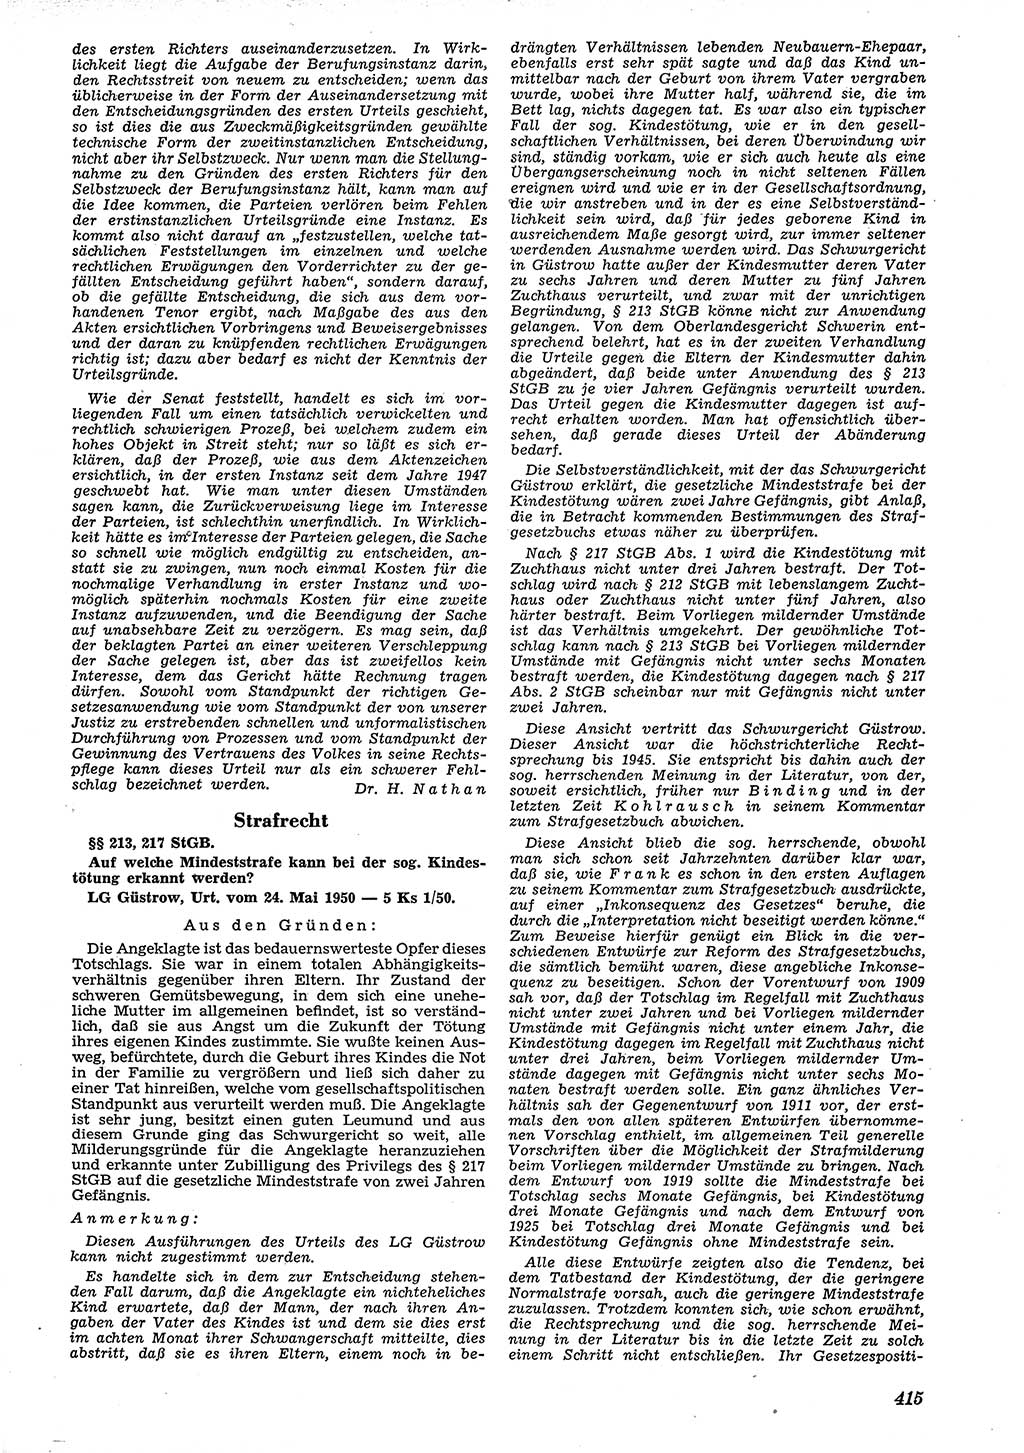 Neue Justiz (NJ), Zeitschrift für Recht und Rechtswissenschaft [Deutsche Demokratische Republik (DDR)], 4. Jahrgang 1950, Seite 415 (NJ DDR 1950, S. 415)